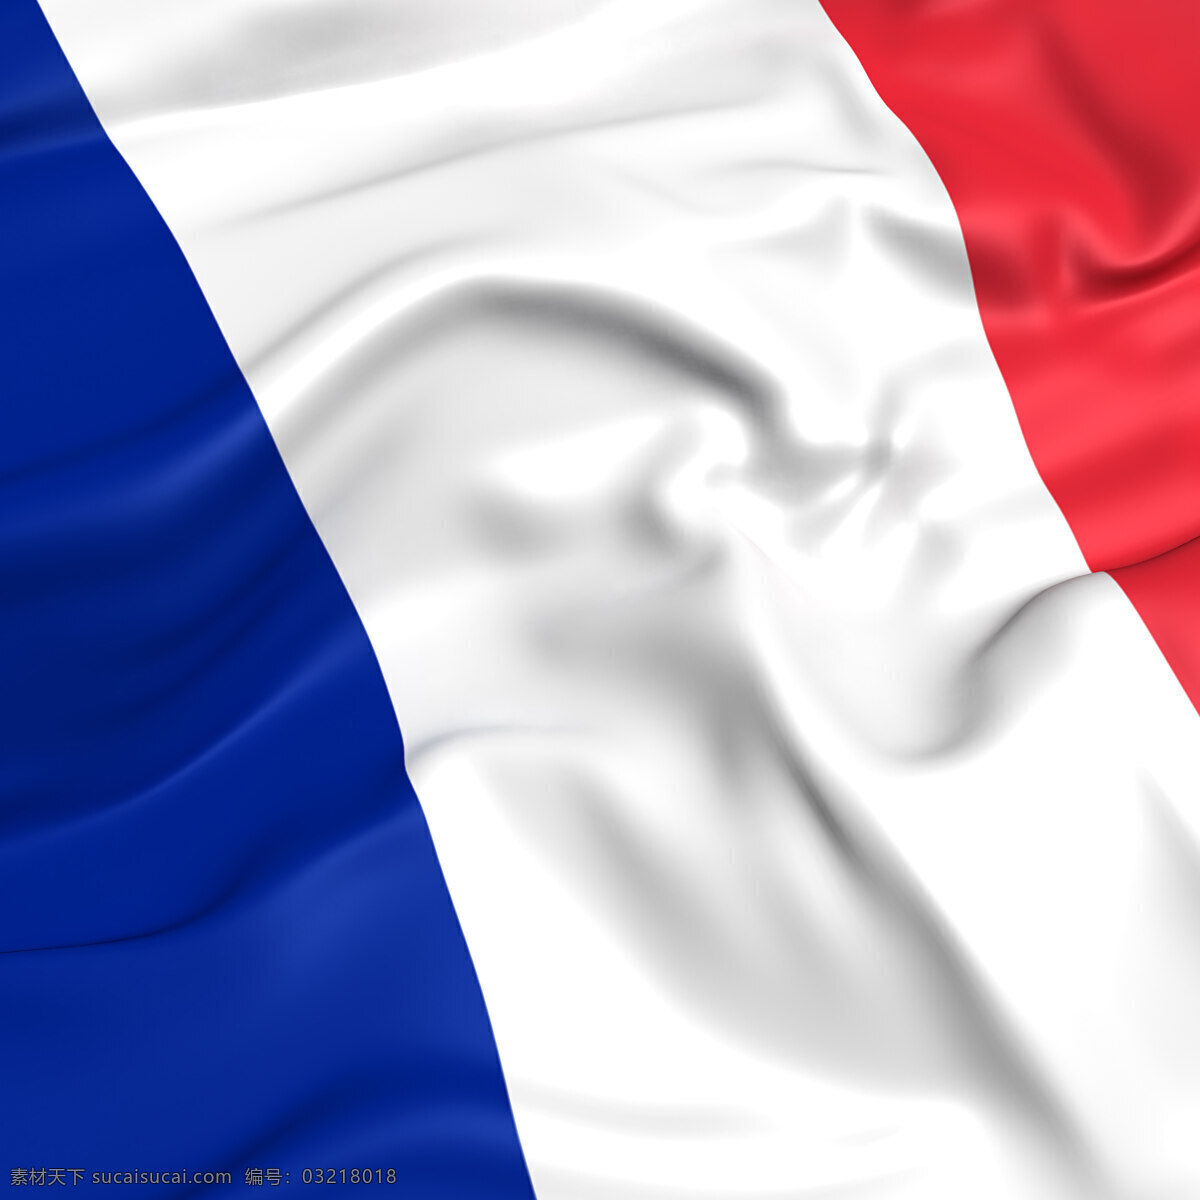 法国 国旗 法国国旗 风景 生活 旅游餐饮